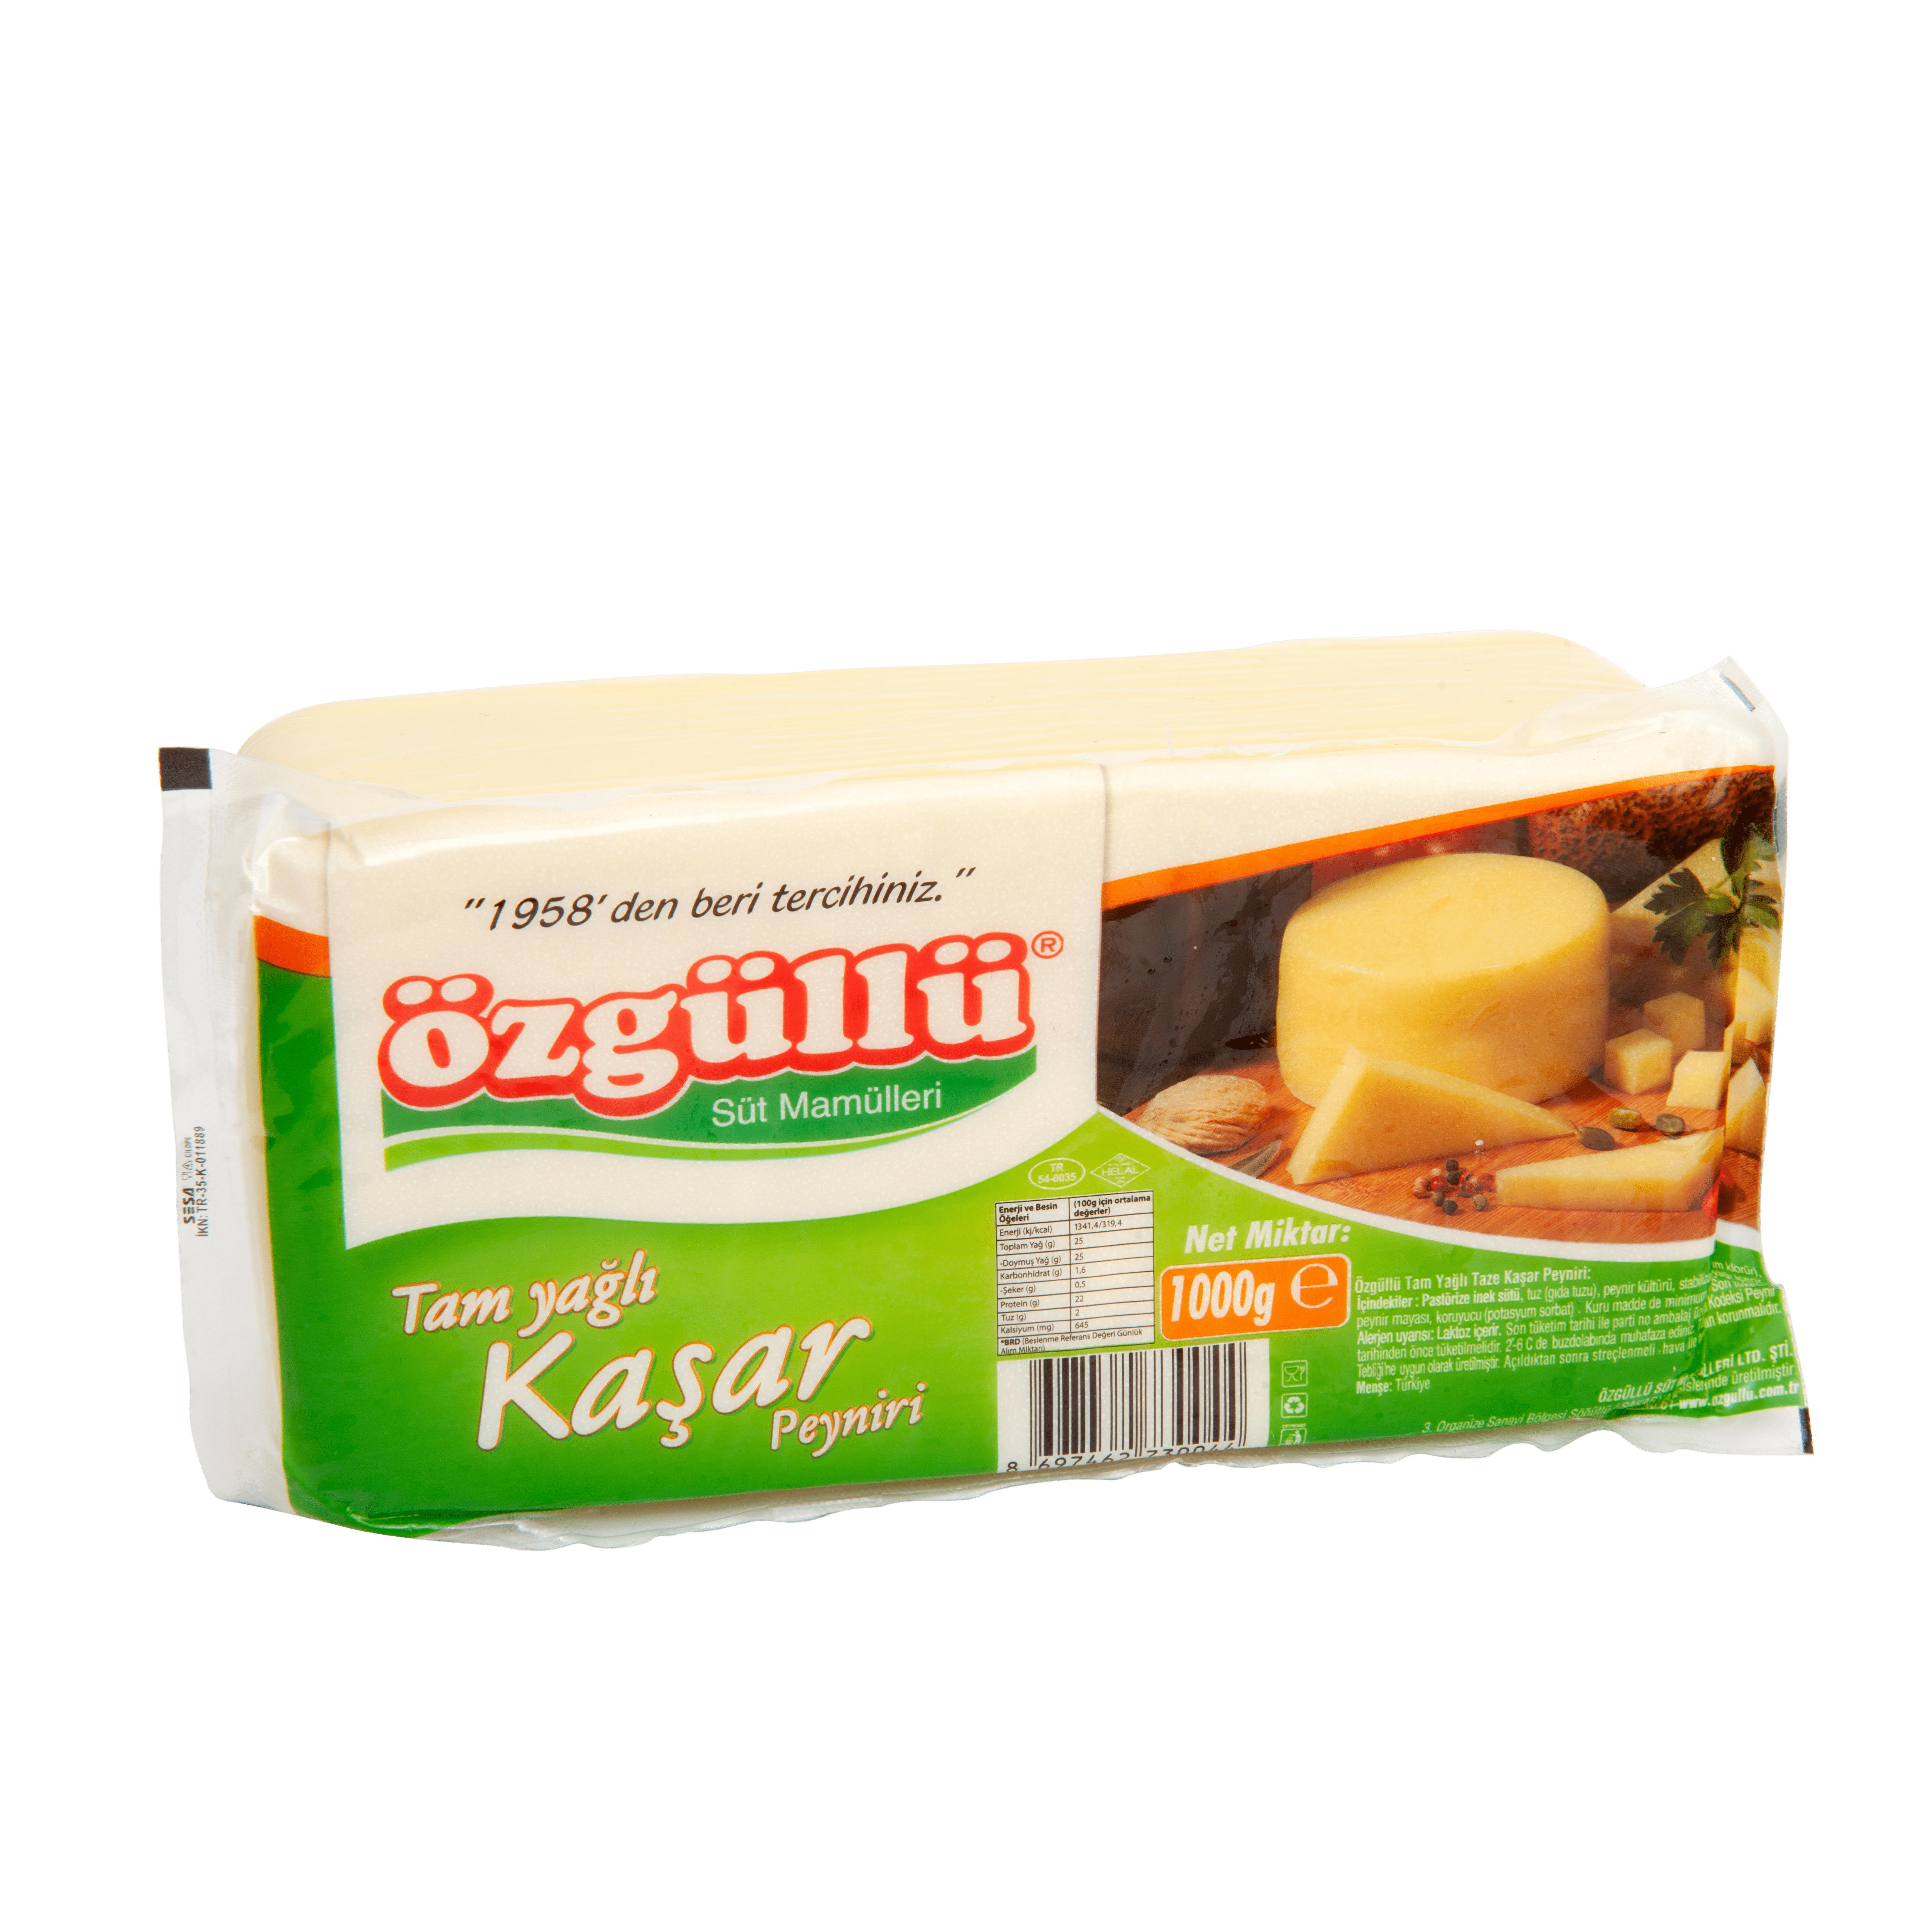 Özgüllü Kaşar Peyniri 1 KG (1000gr) Fiyatı Butik Kahvaltı